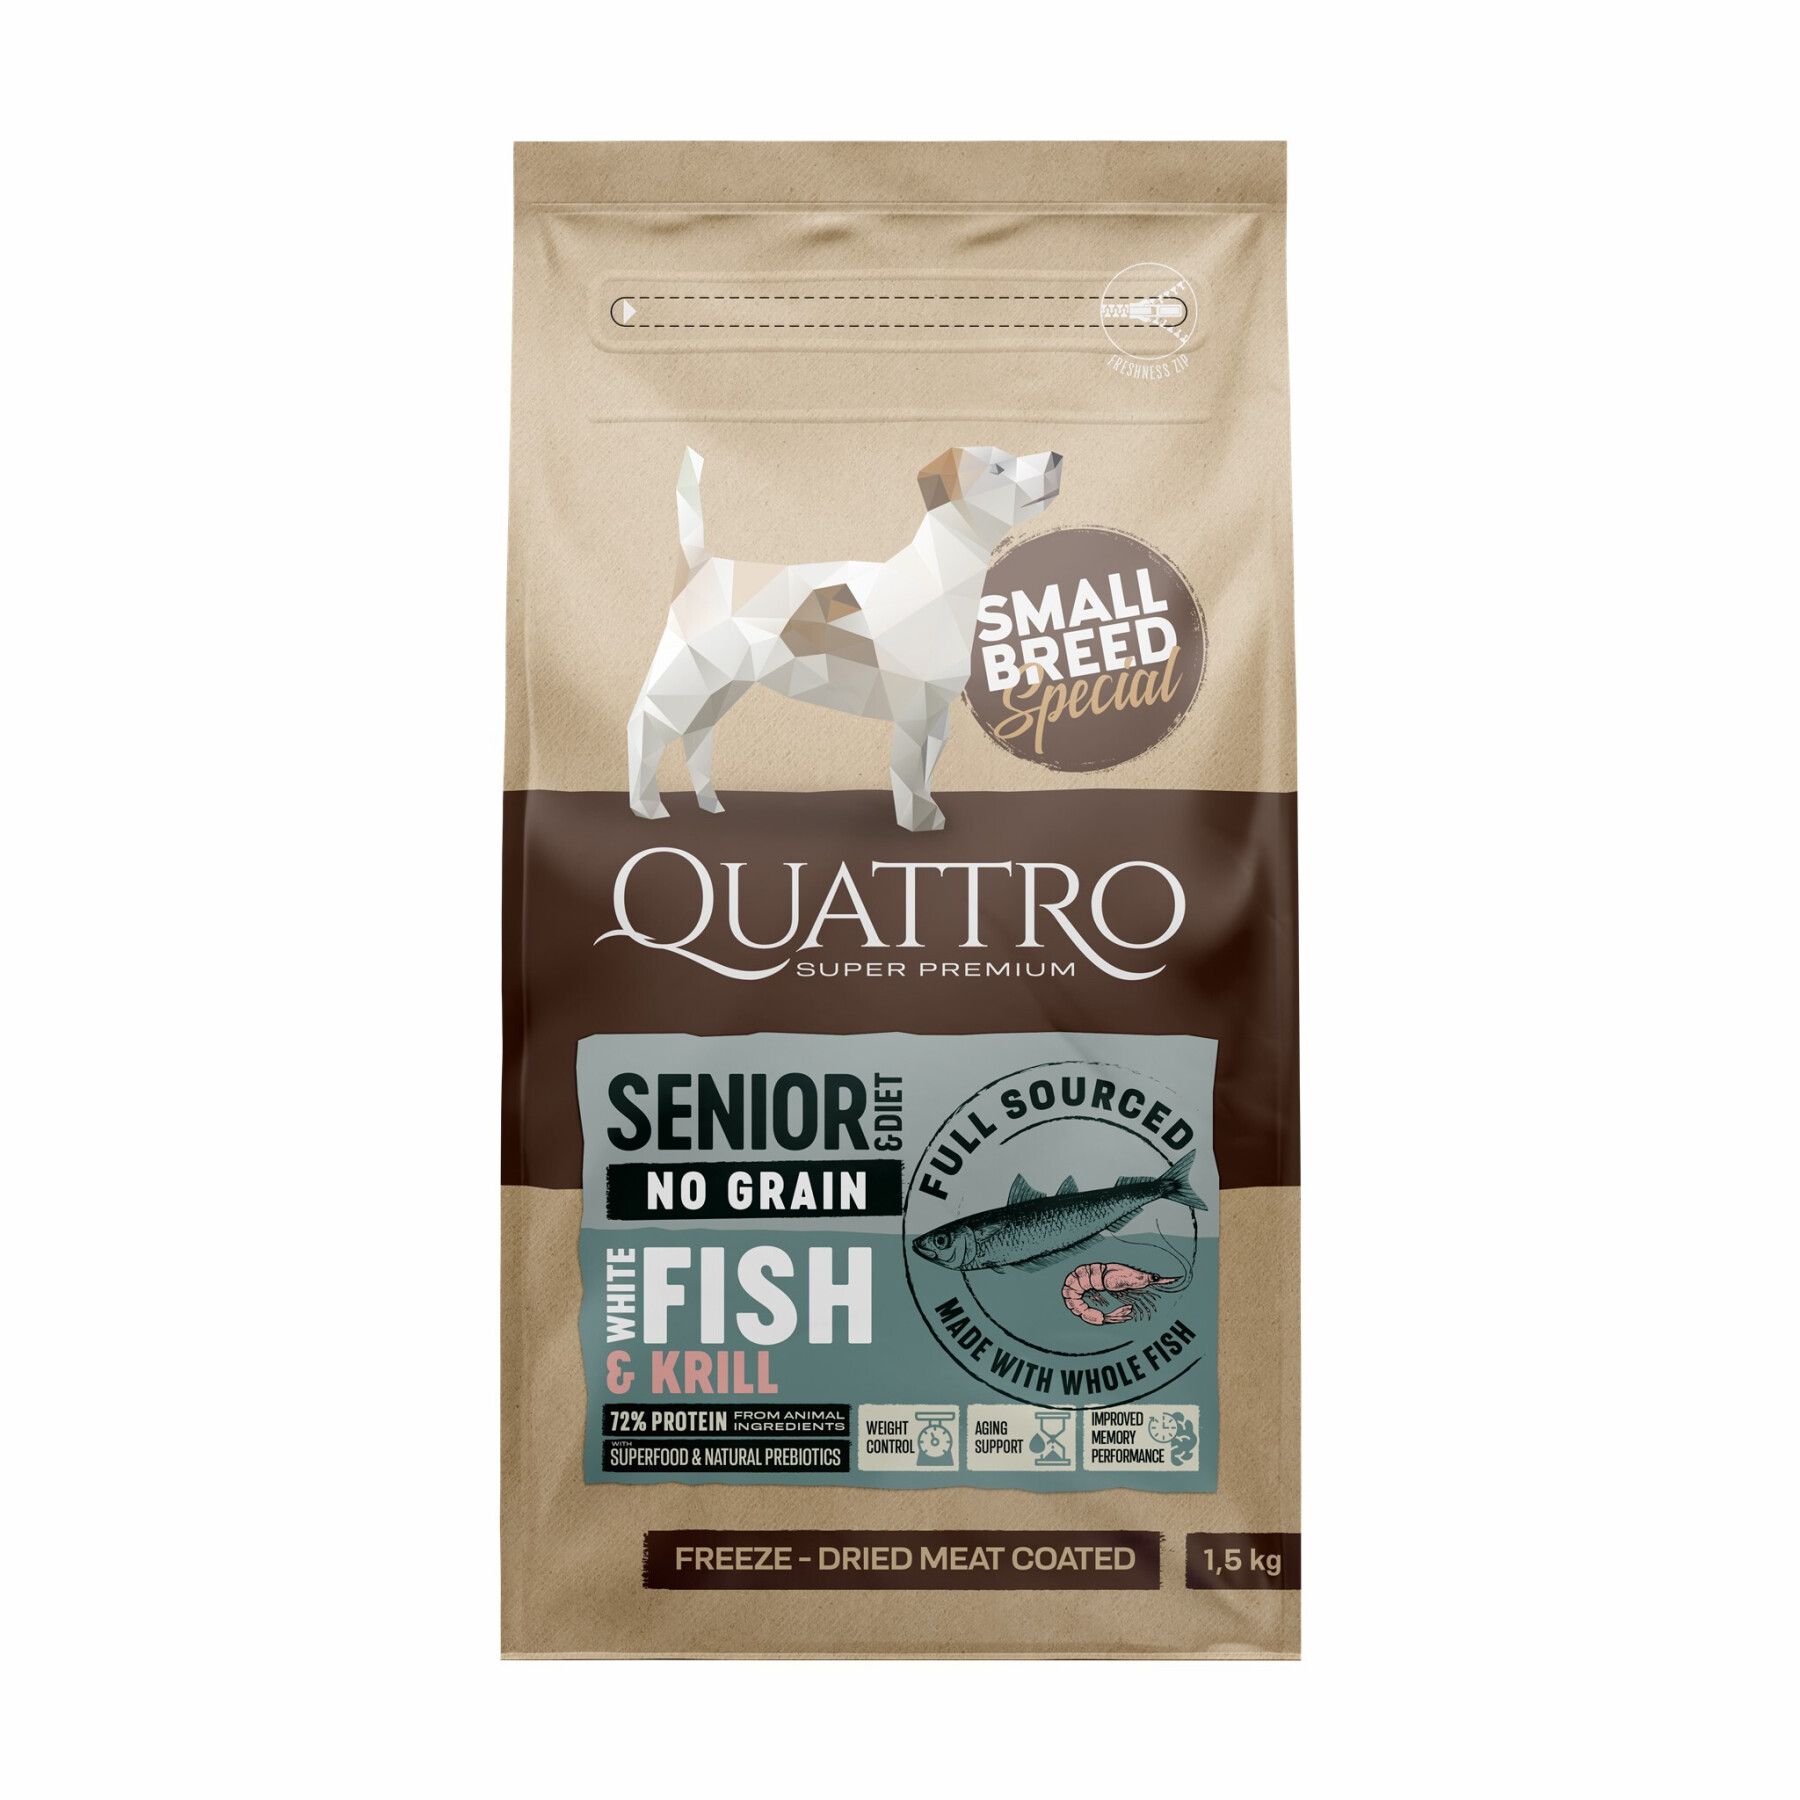 Alimento para perros de razas pequeñas a base de pescado blanco y krill BUBU Pets Quatro Super Premium